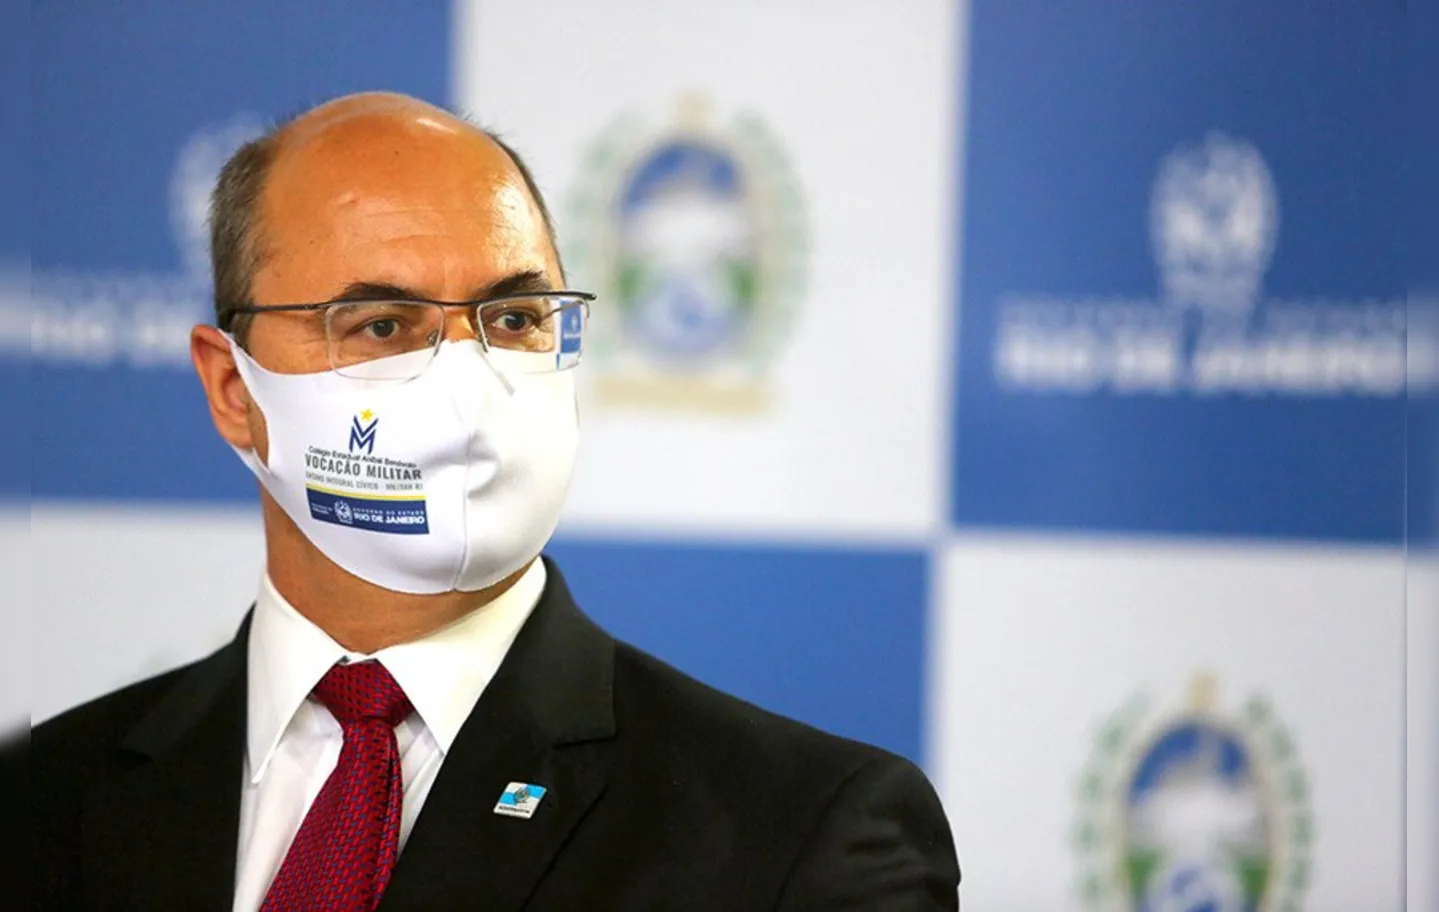 Denuncias apontam que o ex-governador se beneficiou de um esquema de corrupção no início da pandemia| Foto: Philippe Lima | GOVRJ